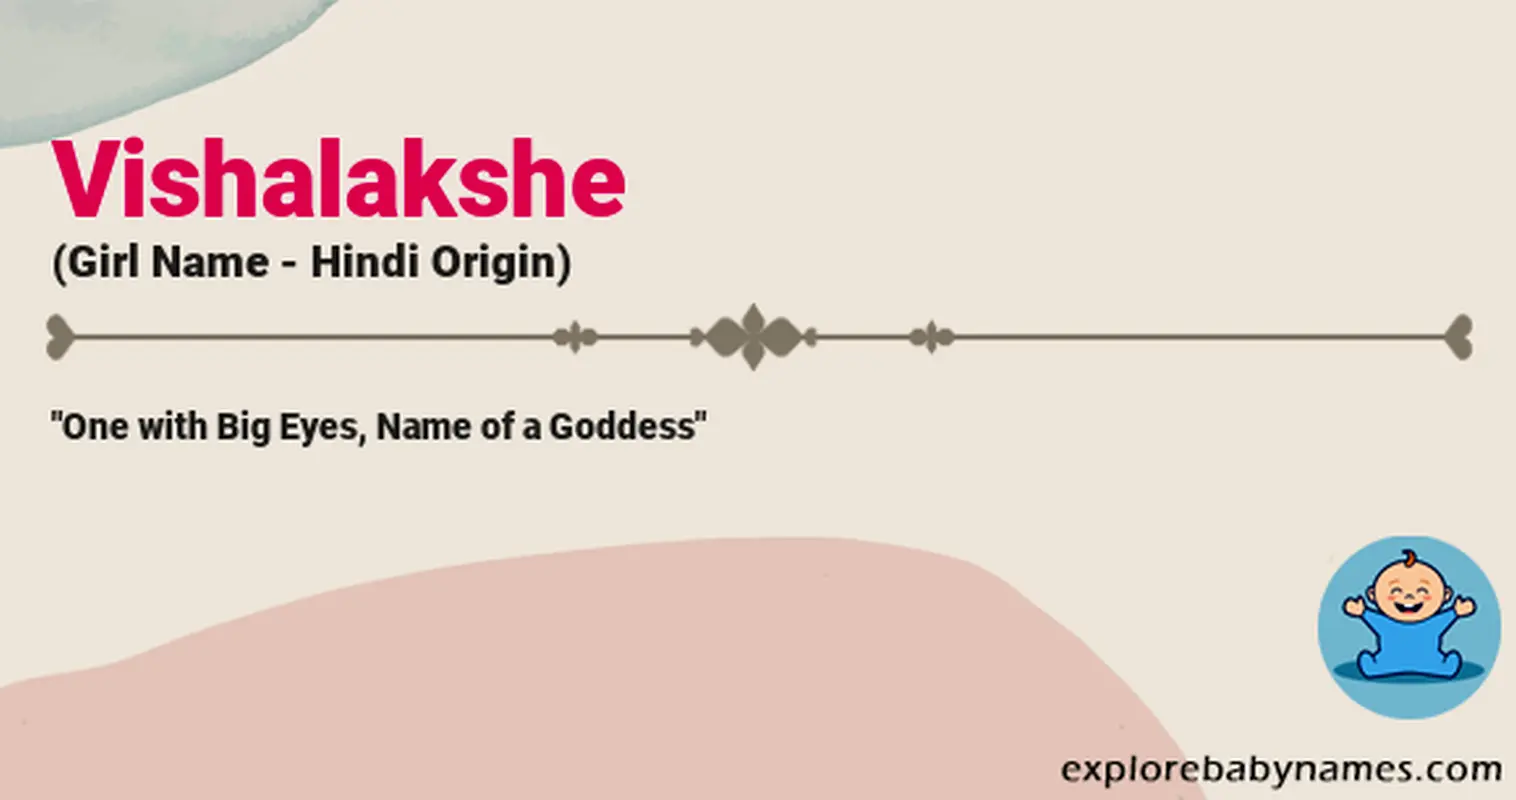 Meaning of Vishalakshe